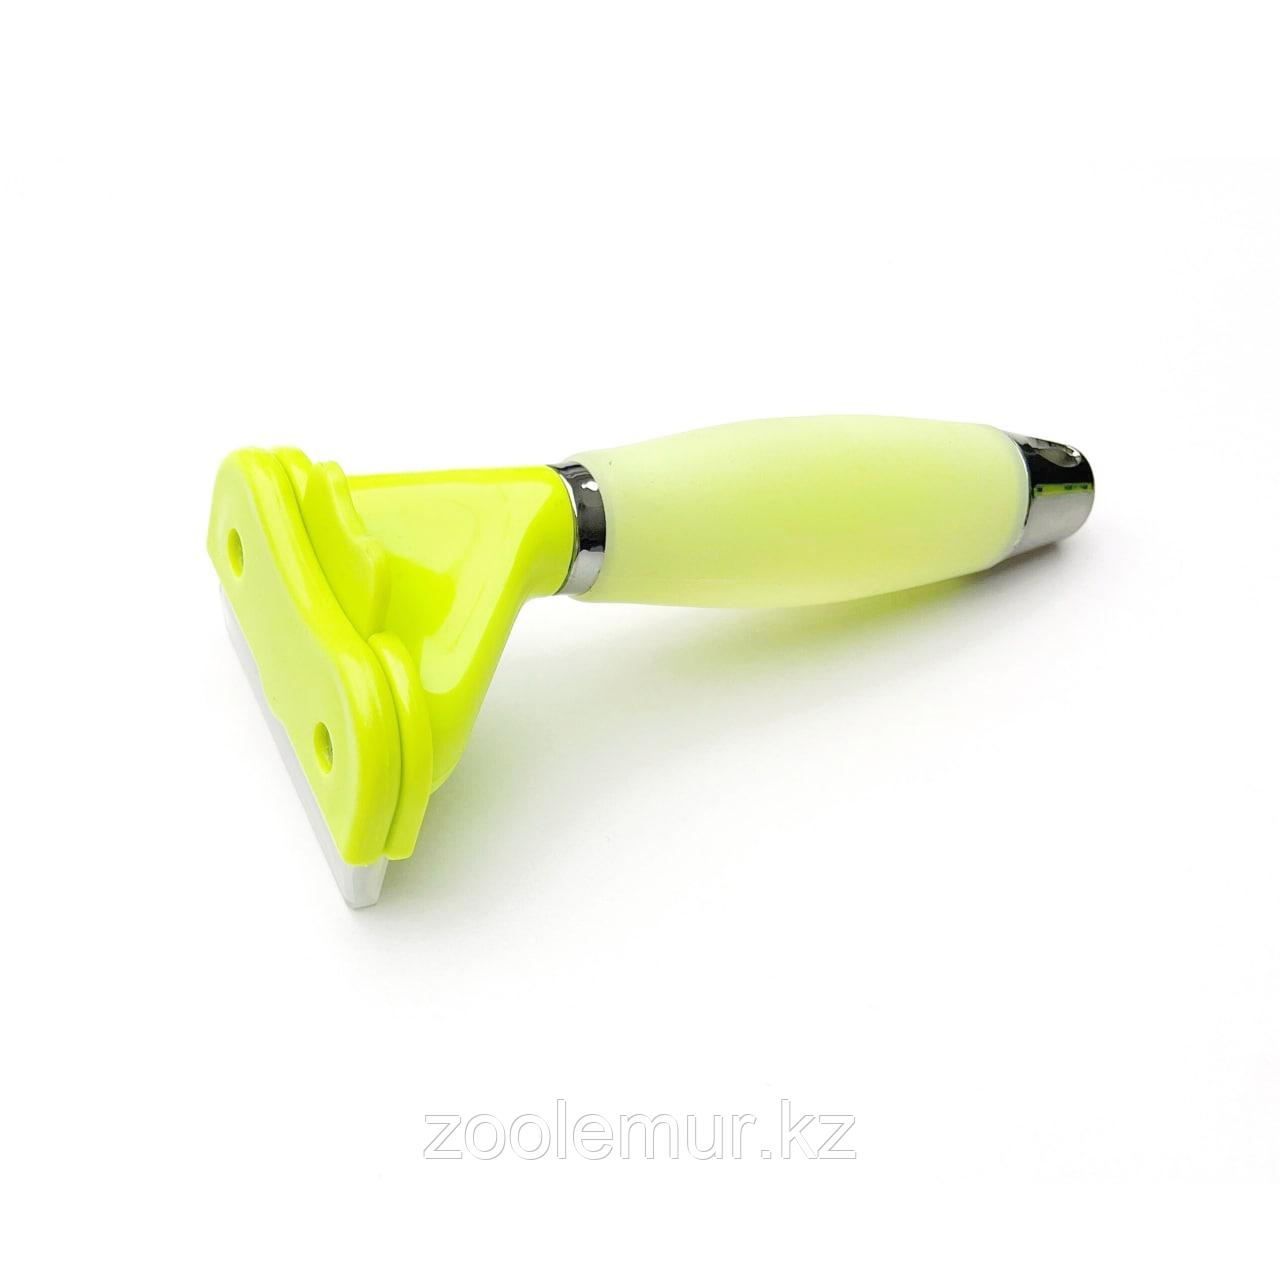 PET STAR Расческа-триммер с силиконовой ручкой, M